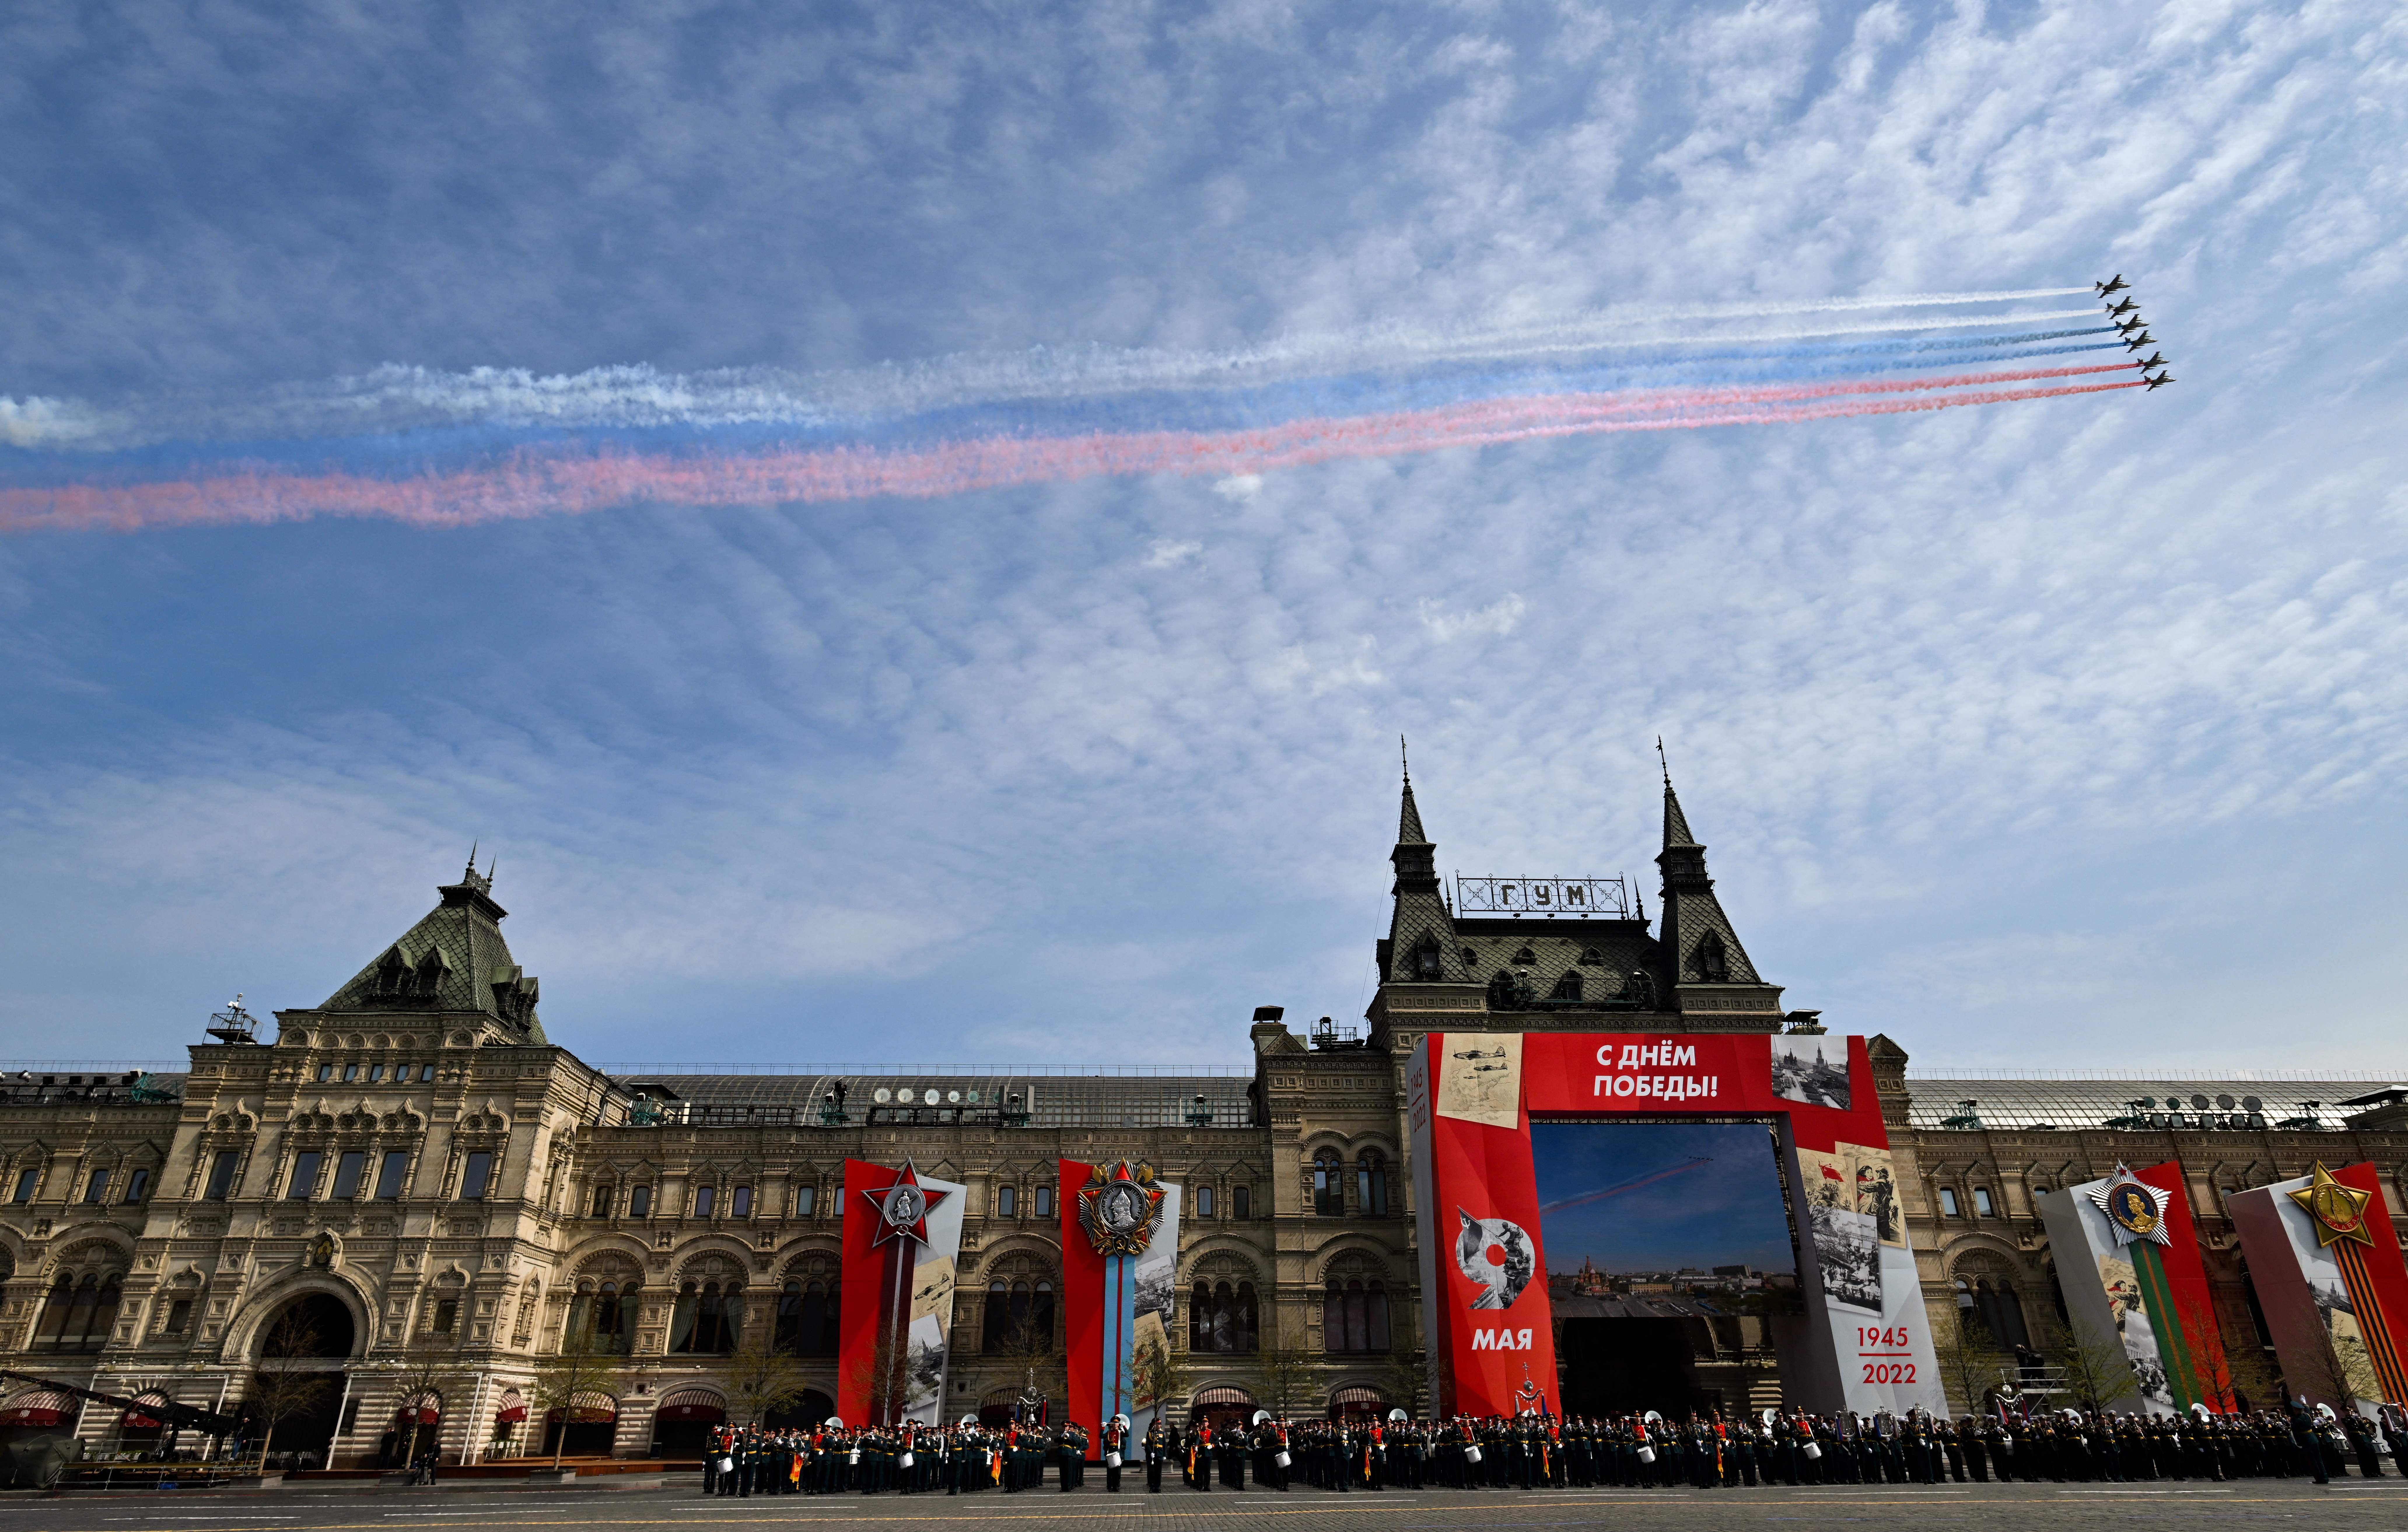     Aviões russos sobrevoam a Praça Vermelha durante um ensaio público para o desfile militar do Dia da Vitória no centro de Moscou em 7 de maio.